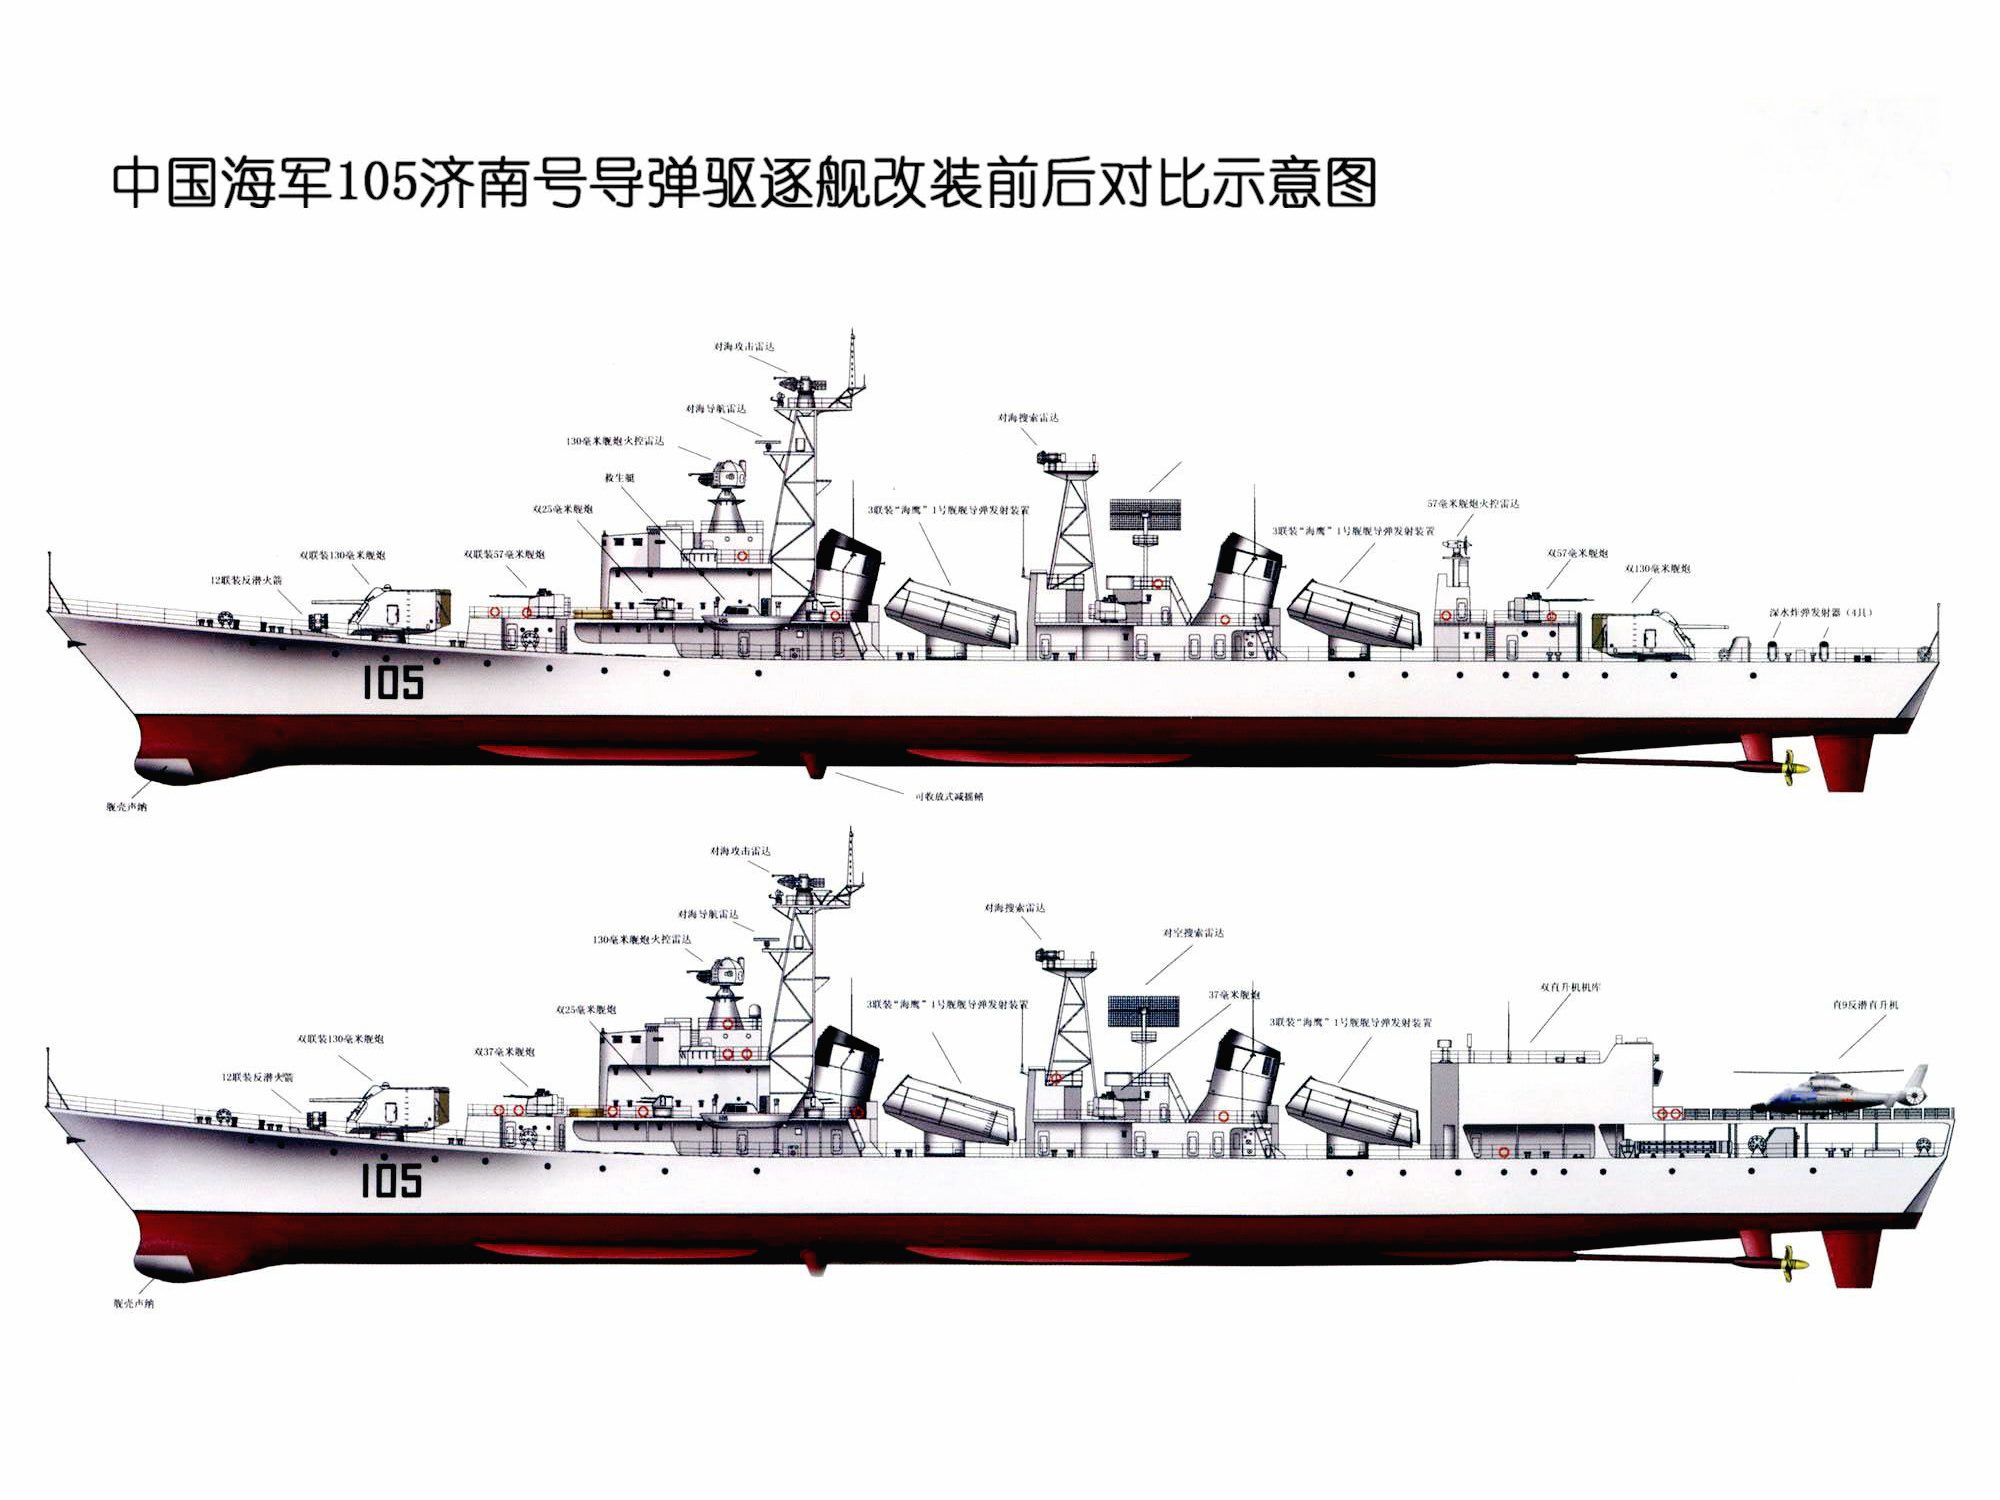 濟南號驅逐艦改裝前後對比側視圖